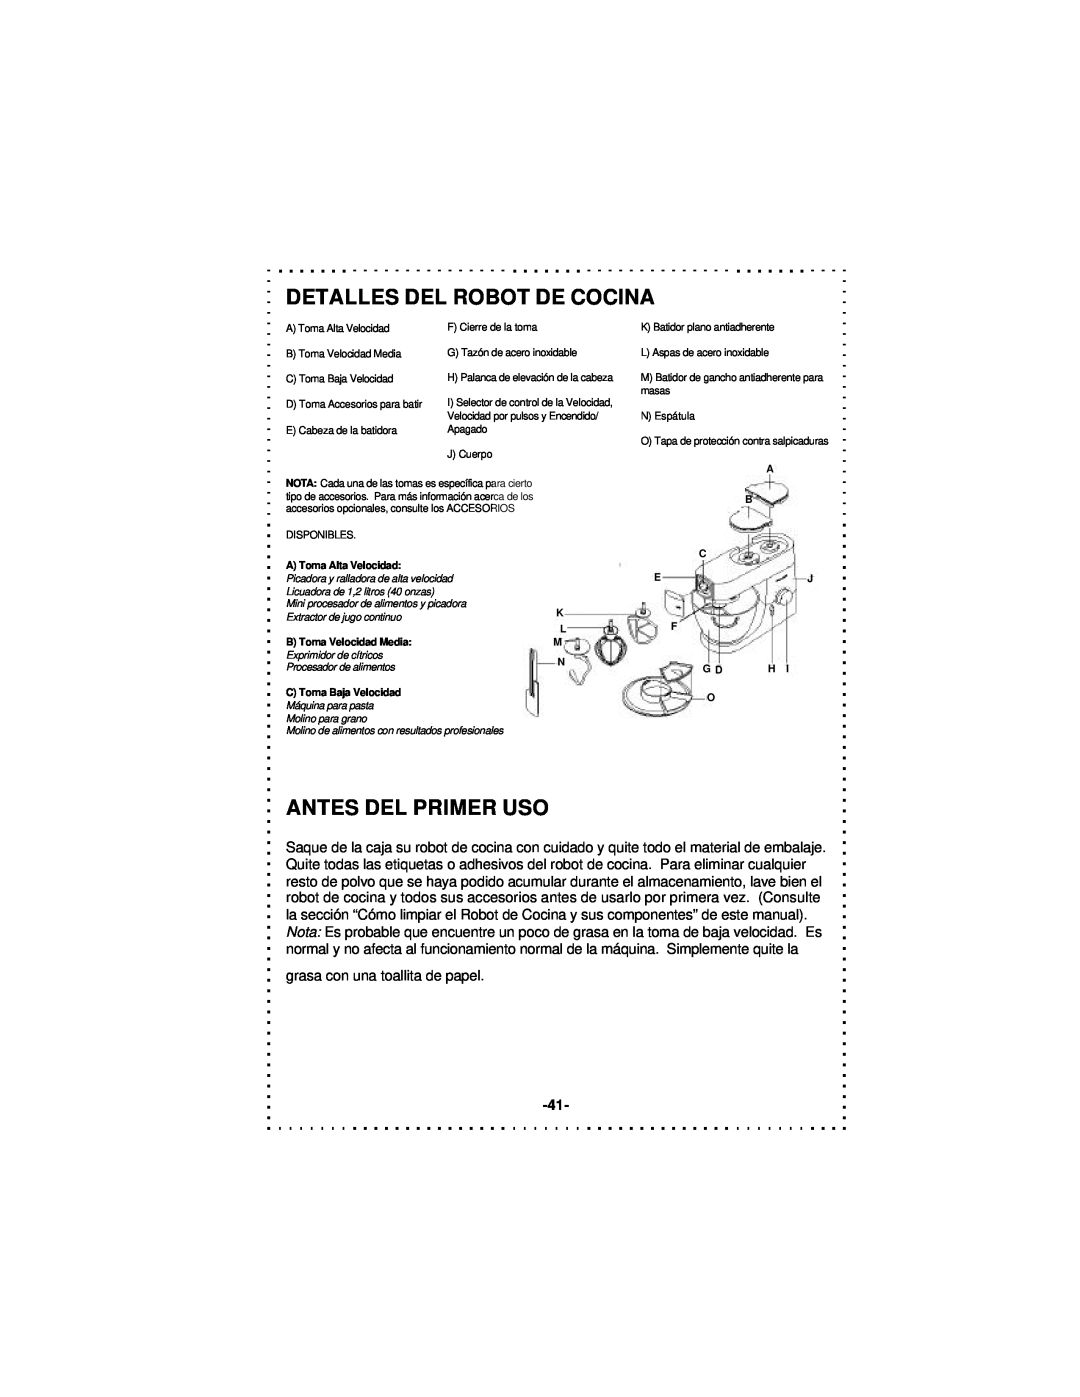 DeLonghi DSM5 - 7 Series instruction manual Detalles Del Robot De Cocina, Antes Del Primer Uso 